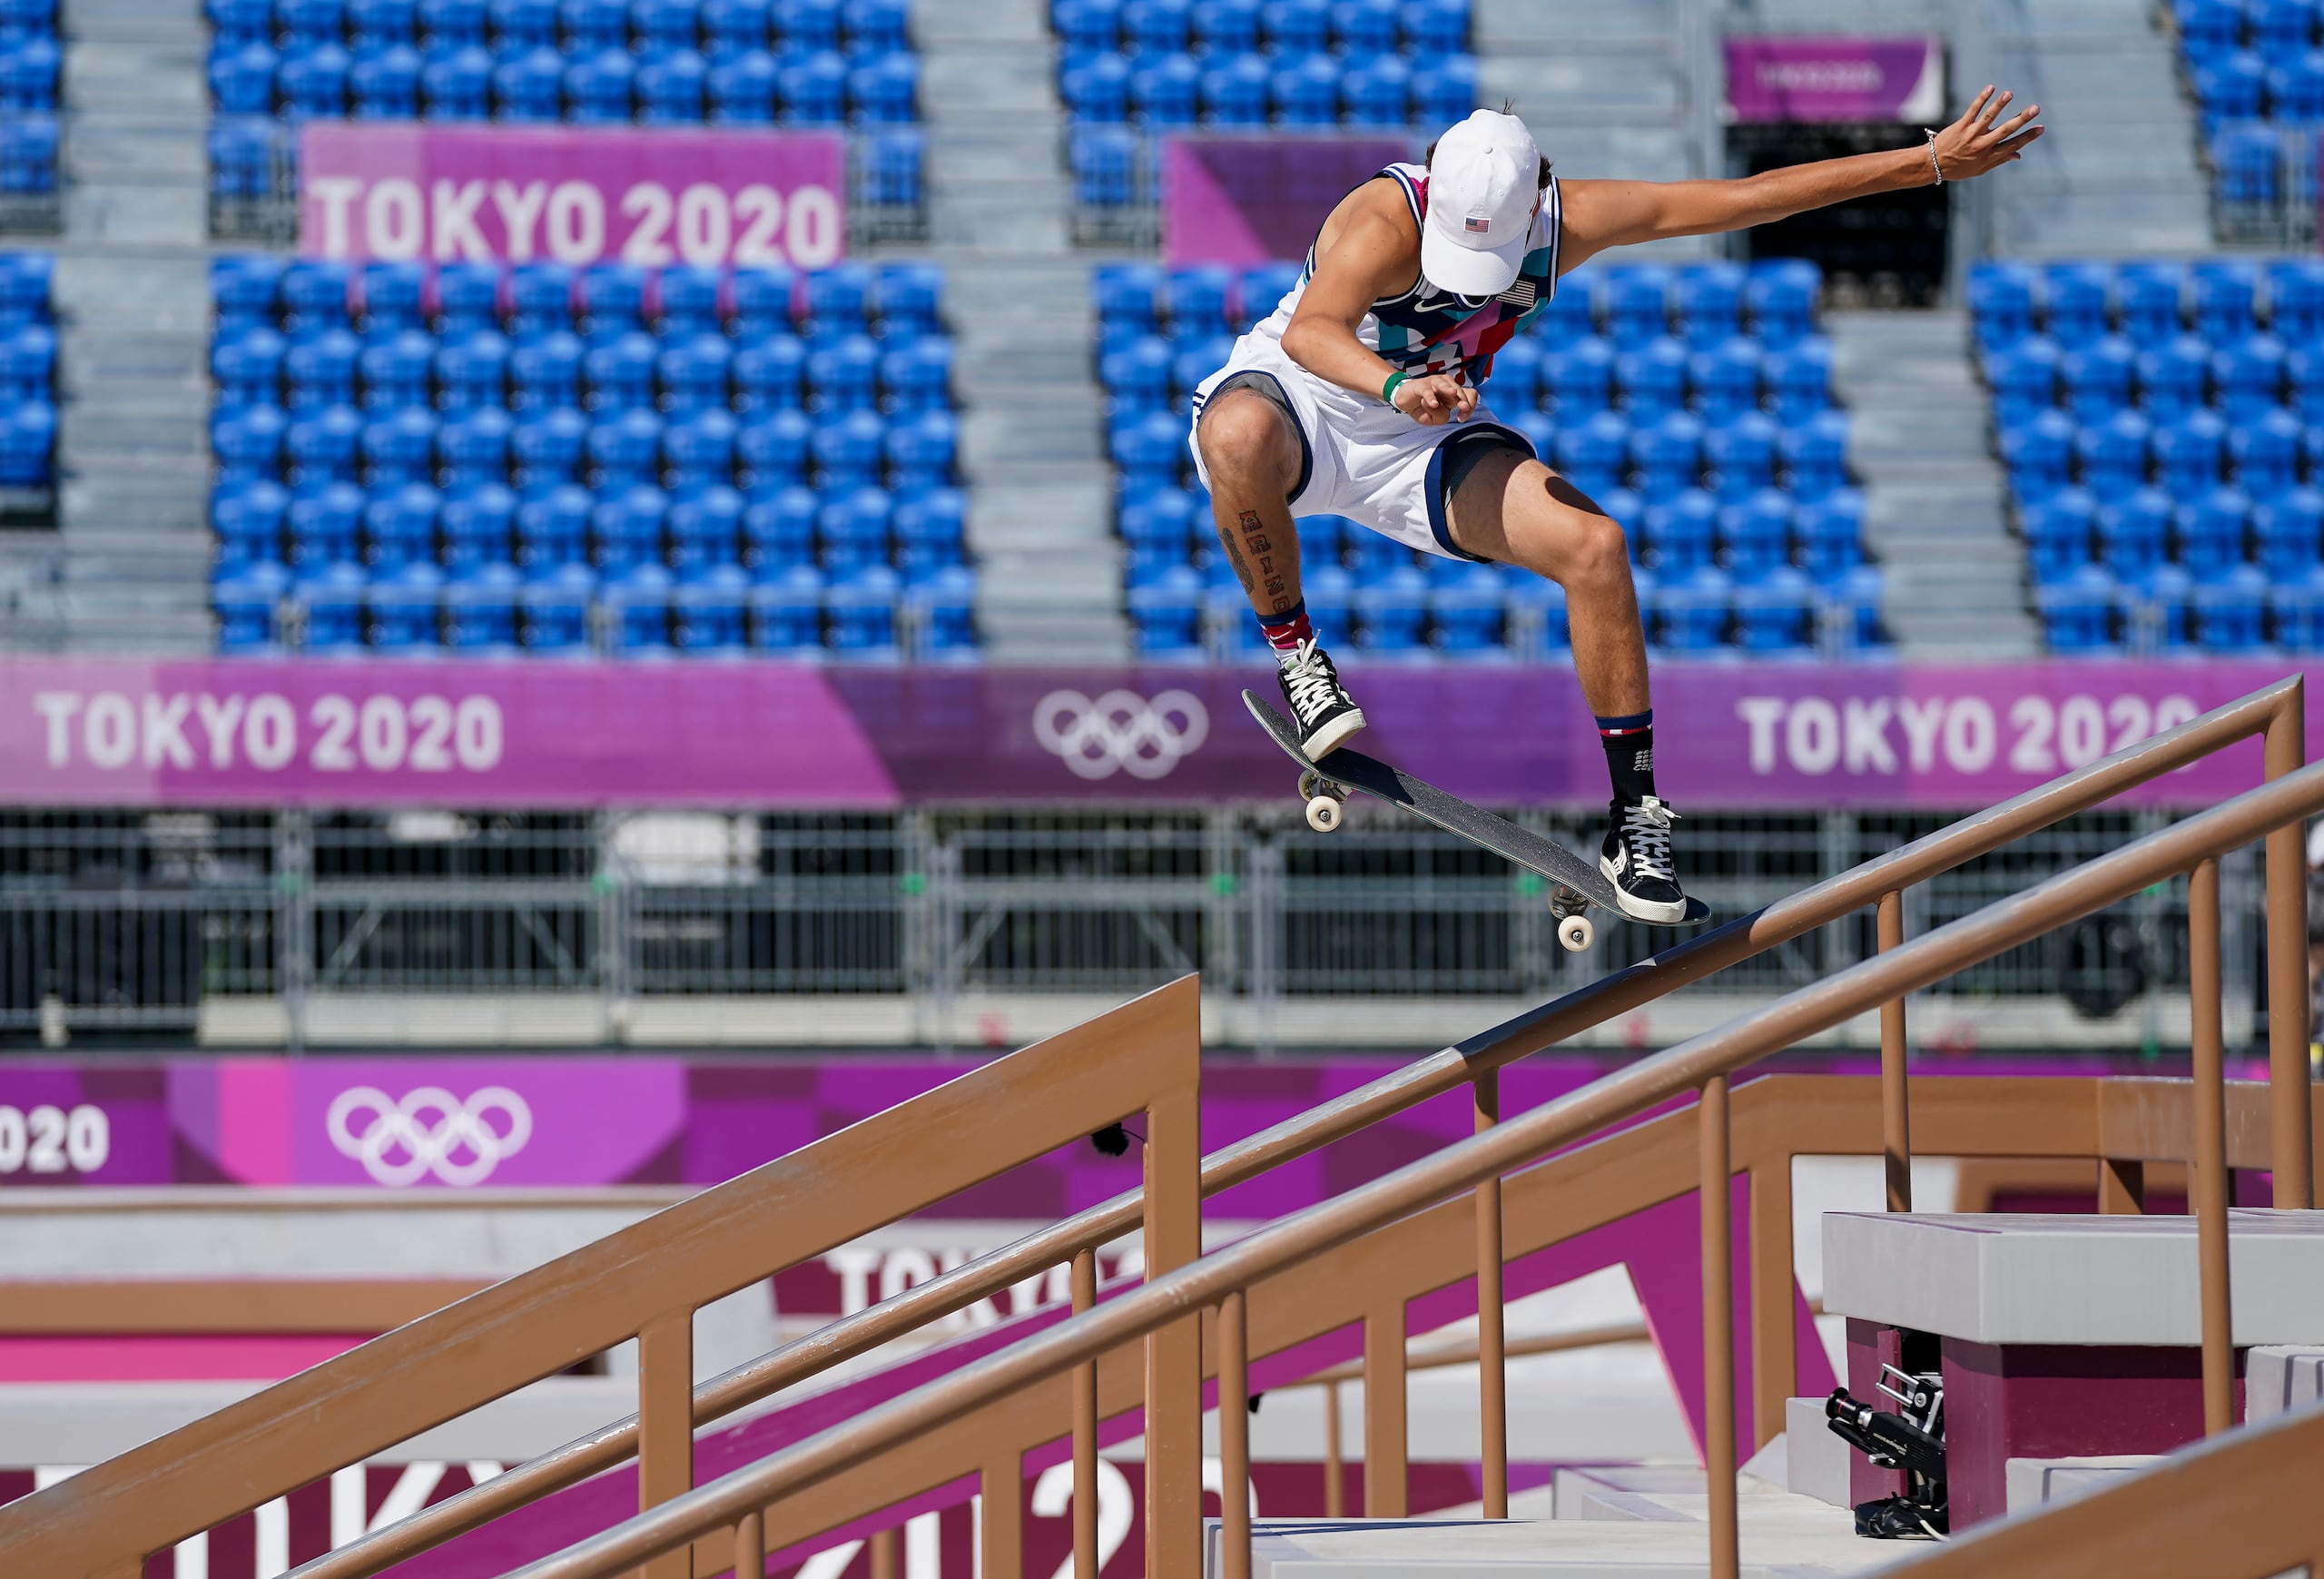 El estadounidense Jagger Eaton compitiendo en el evento de skateboarding en los Juegos Olímpicos de Tokio.